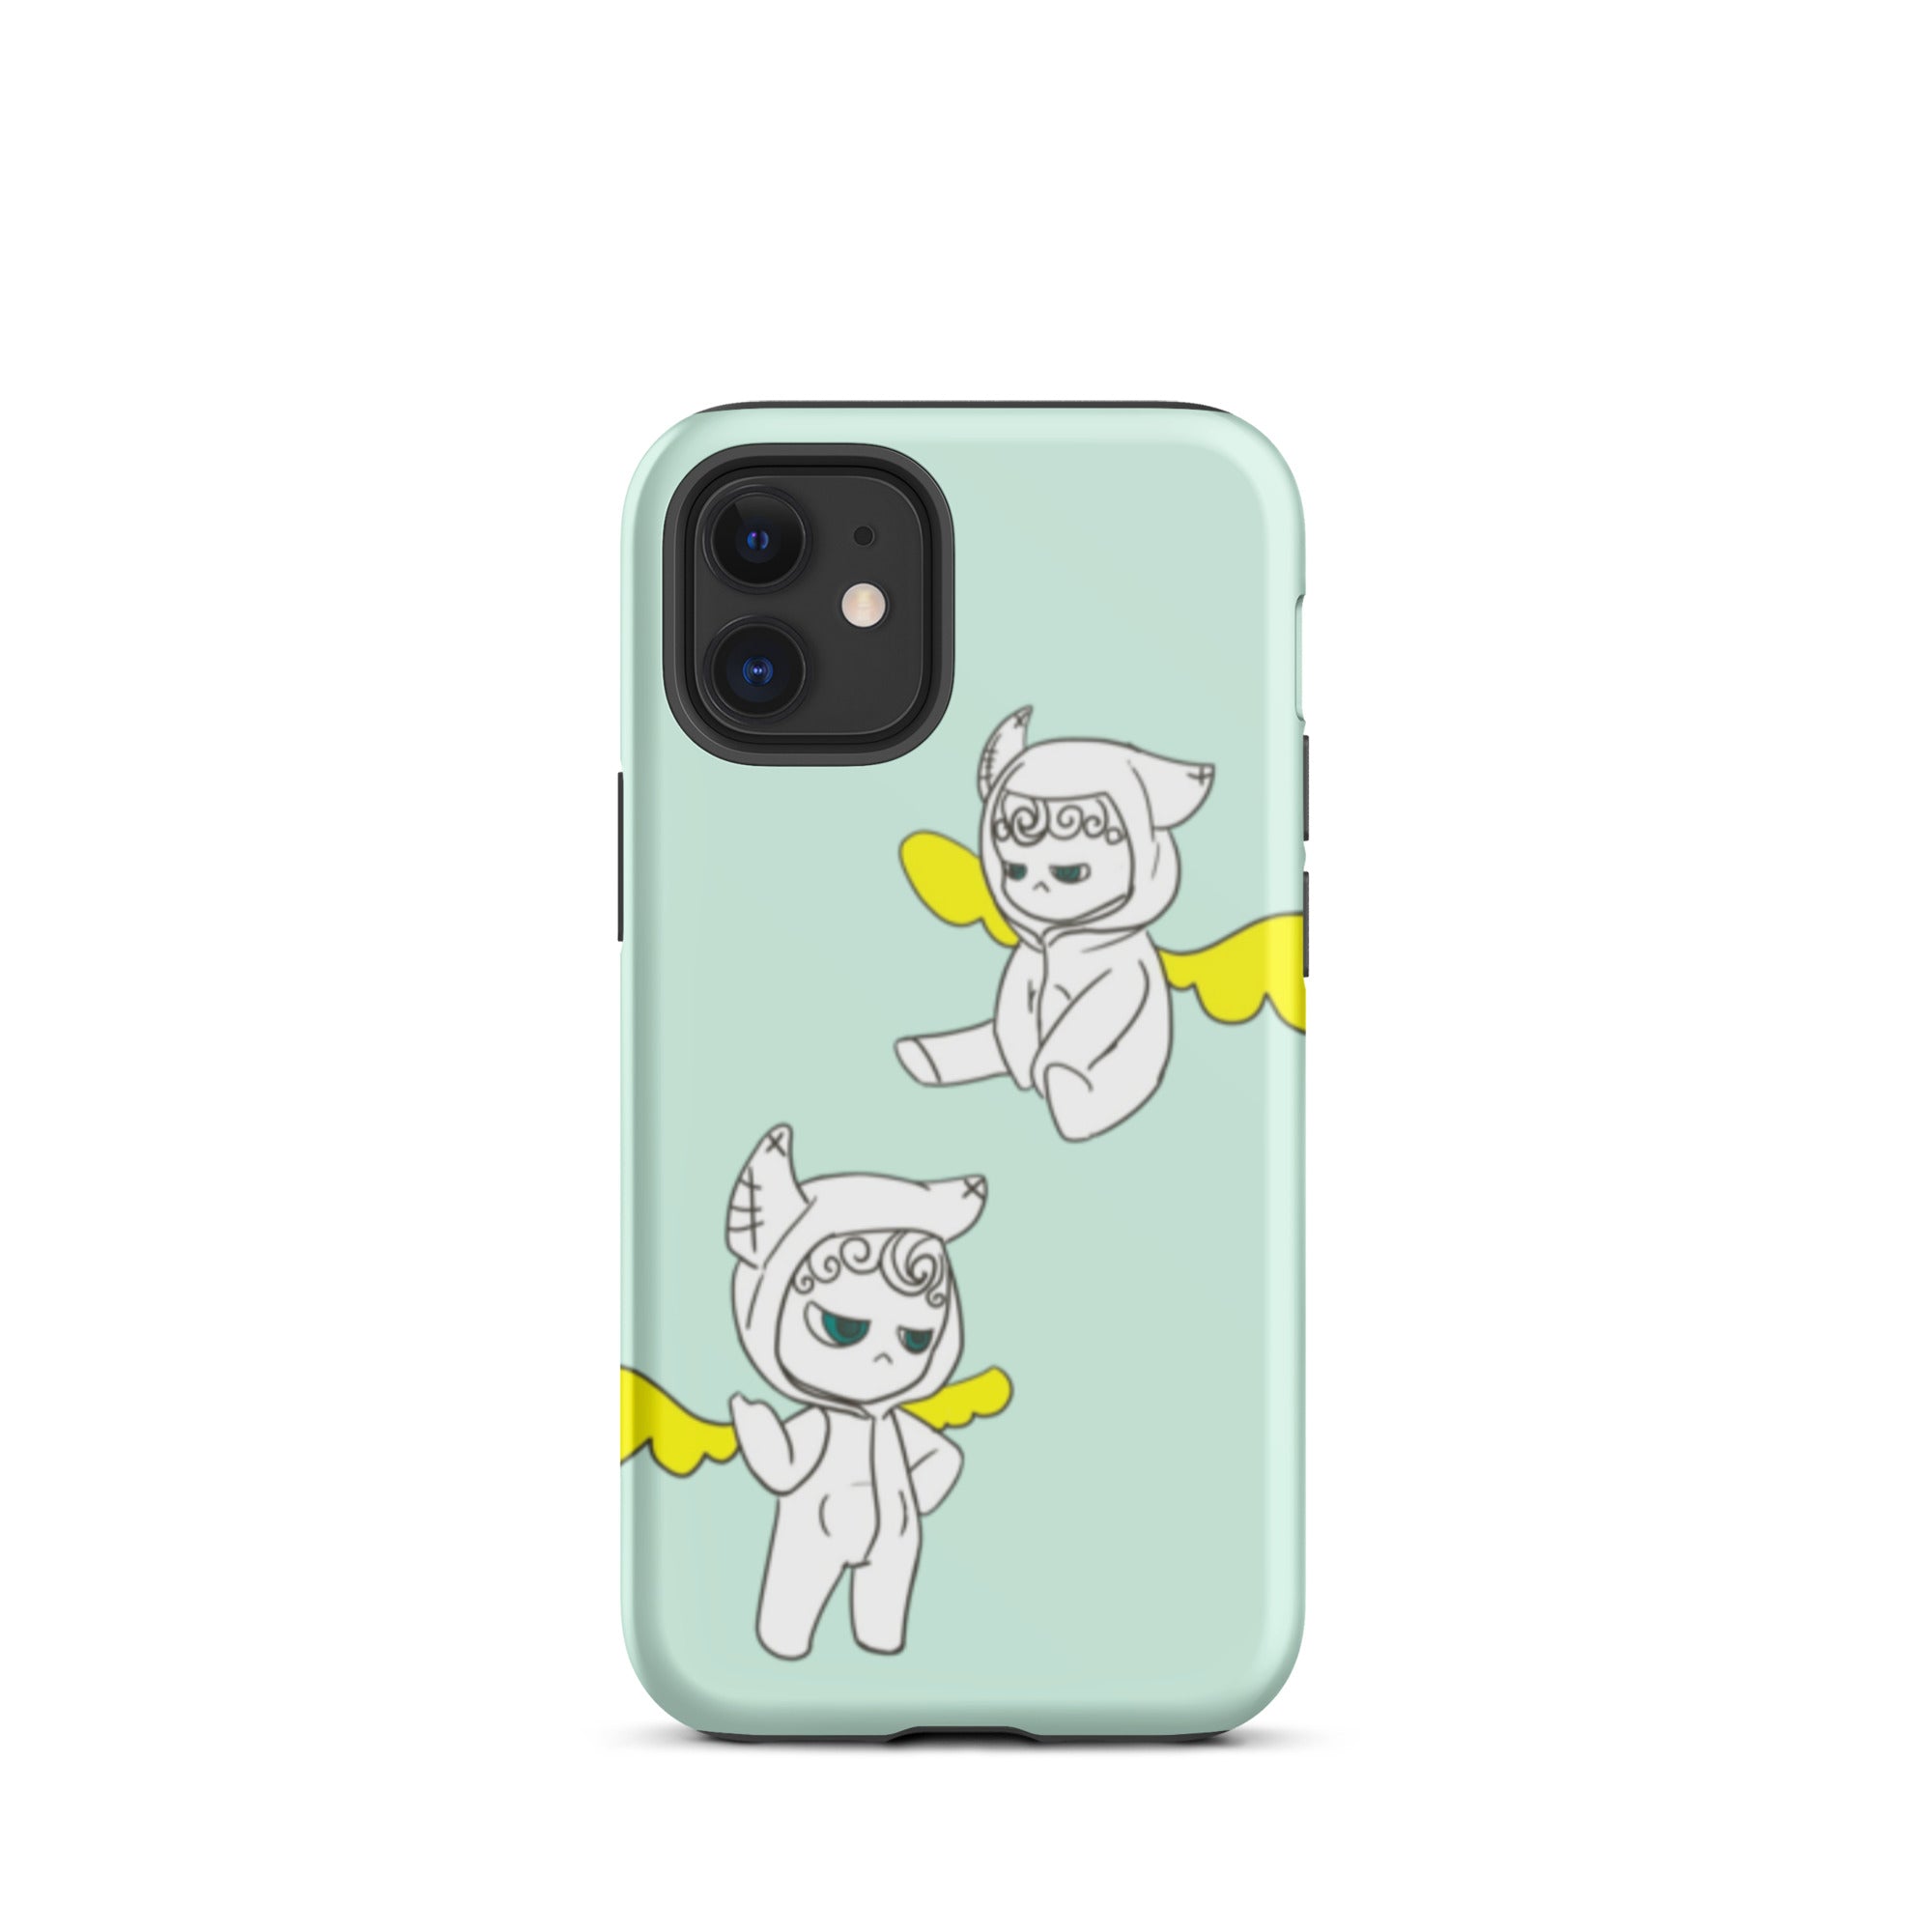 Cute Angel iPhone case